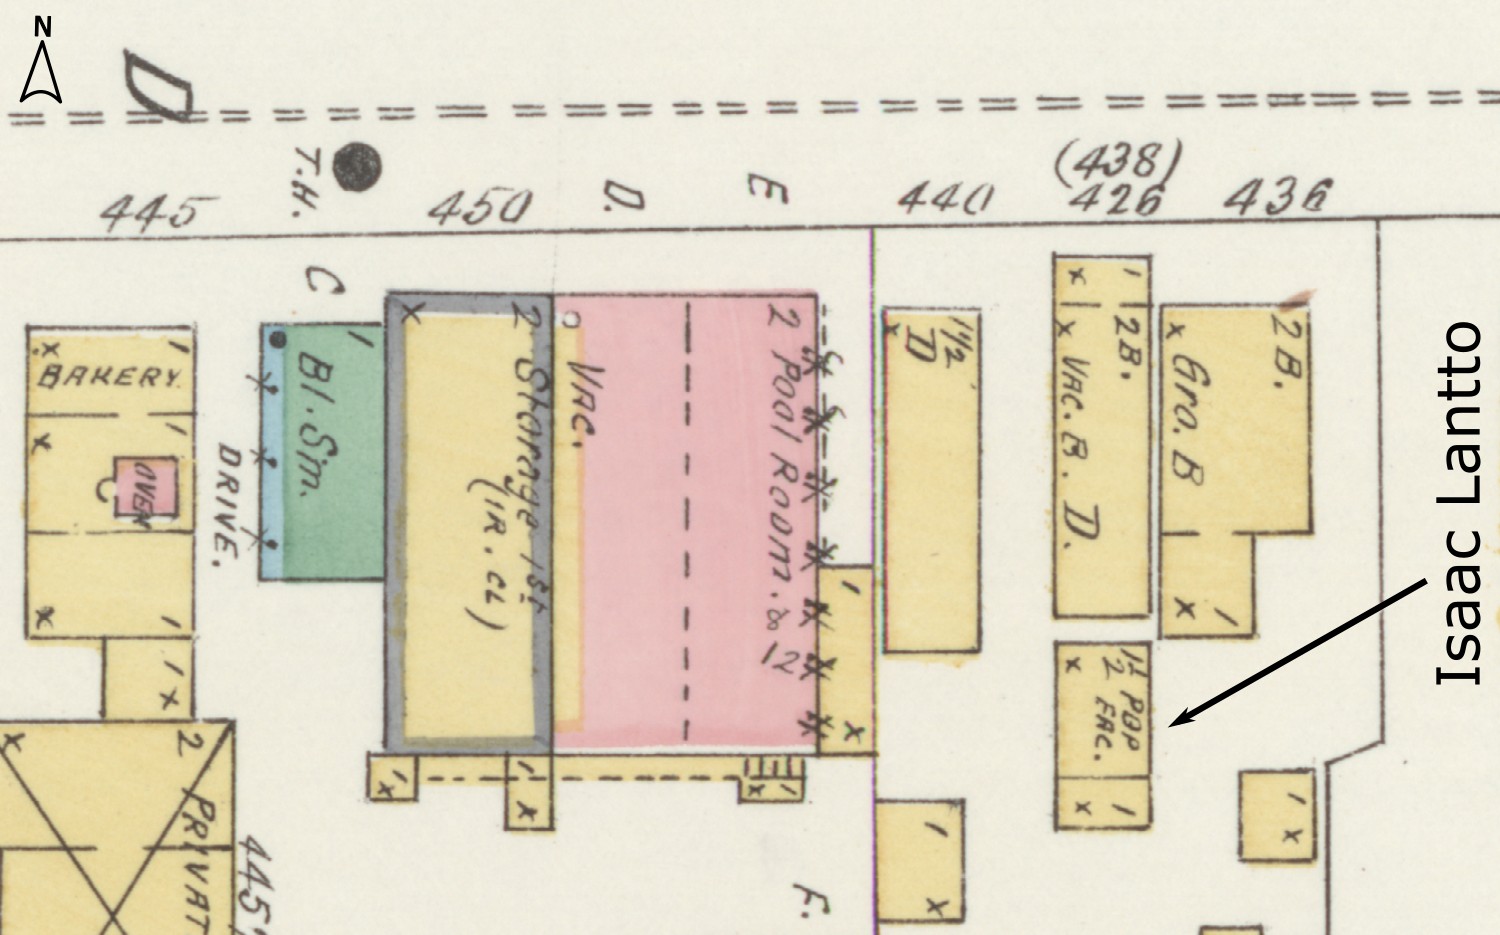 Sanborn map - Dec 1897